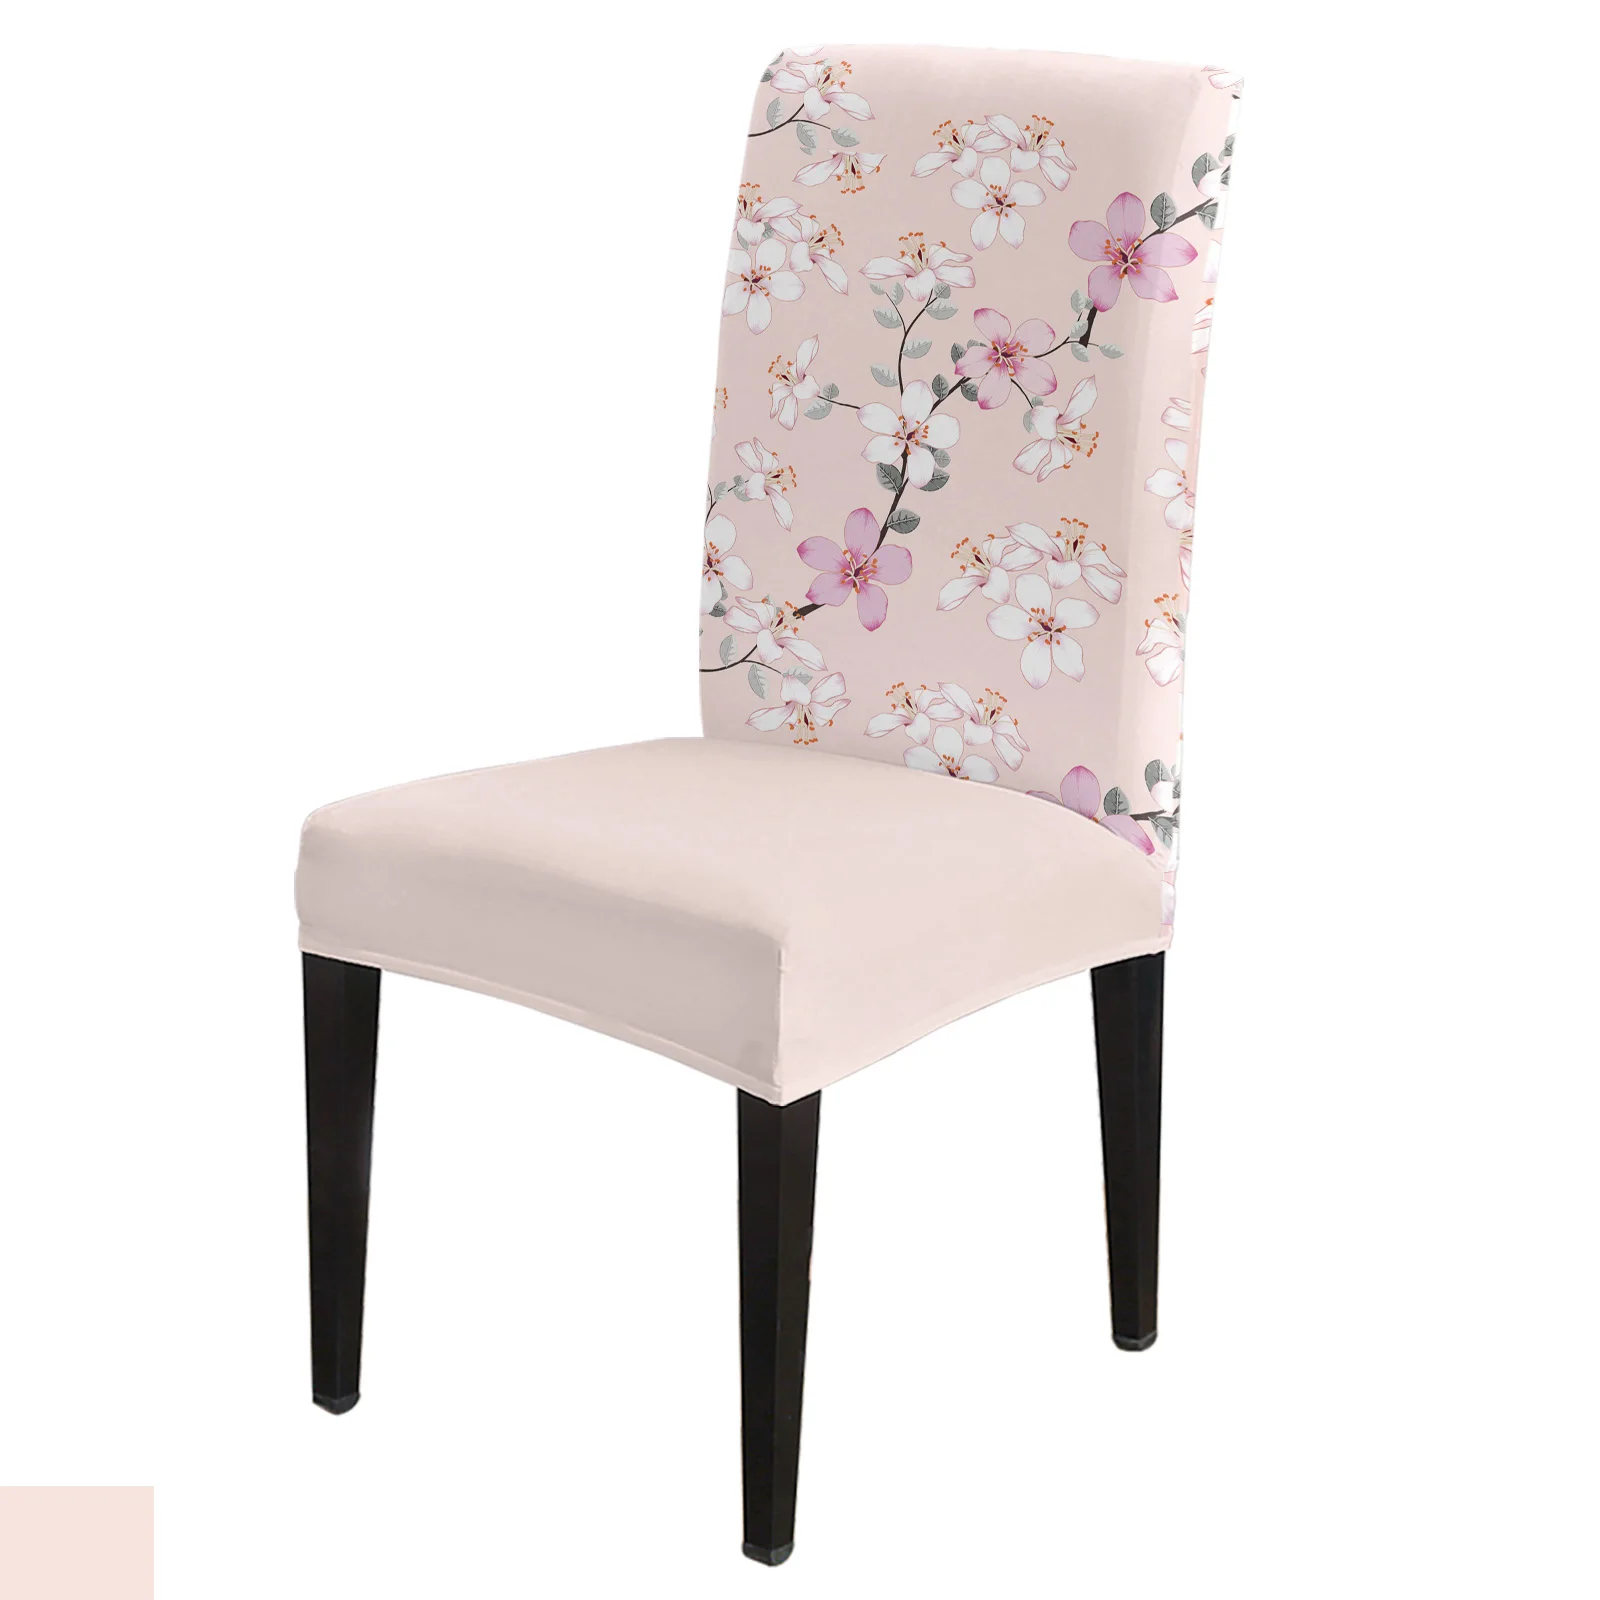 

Чехол для обеденного стула, эластичный чехол из спандекса розового цветка персикового цвета, для кухни, банкета, свадьбы, вечеринки, весна